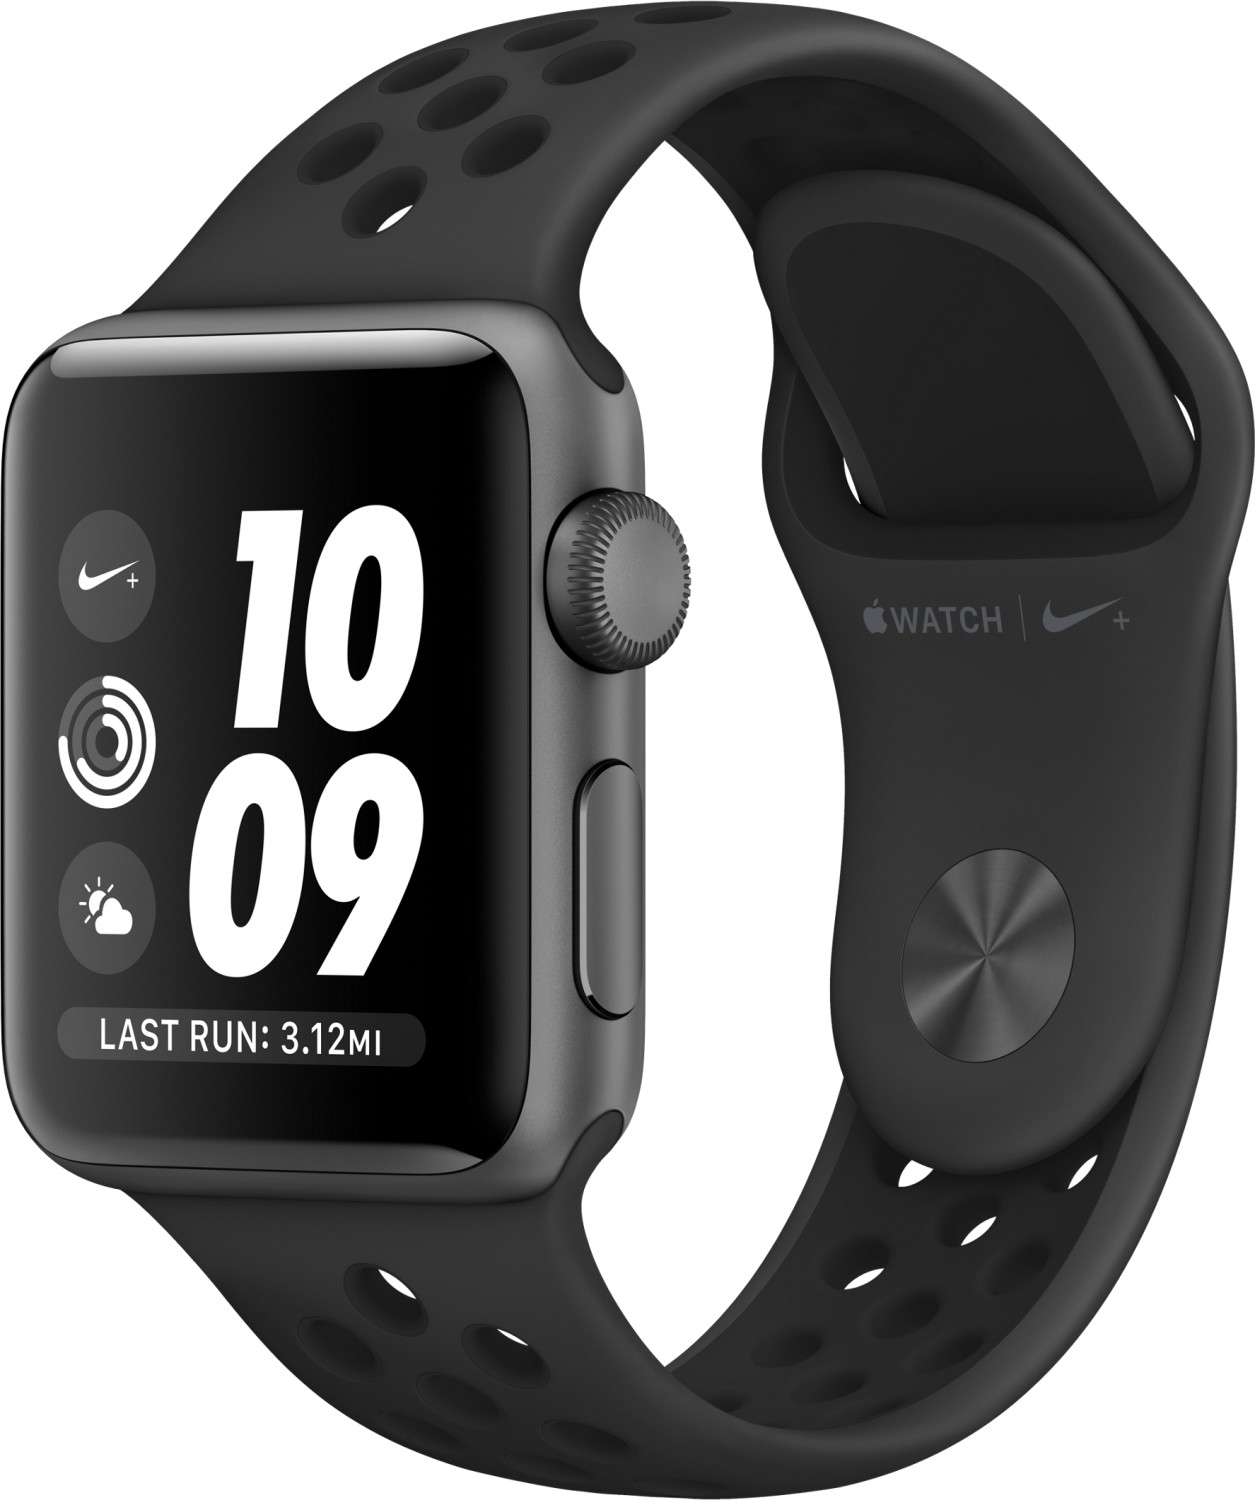 Apple Watch Series 3 Nike+ GPS a € 218,99 | dicembre 2020 | Miglior prezzo  su idealo